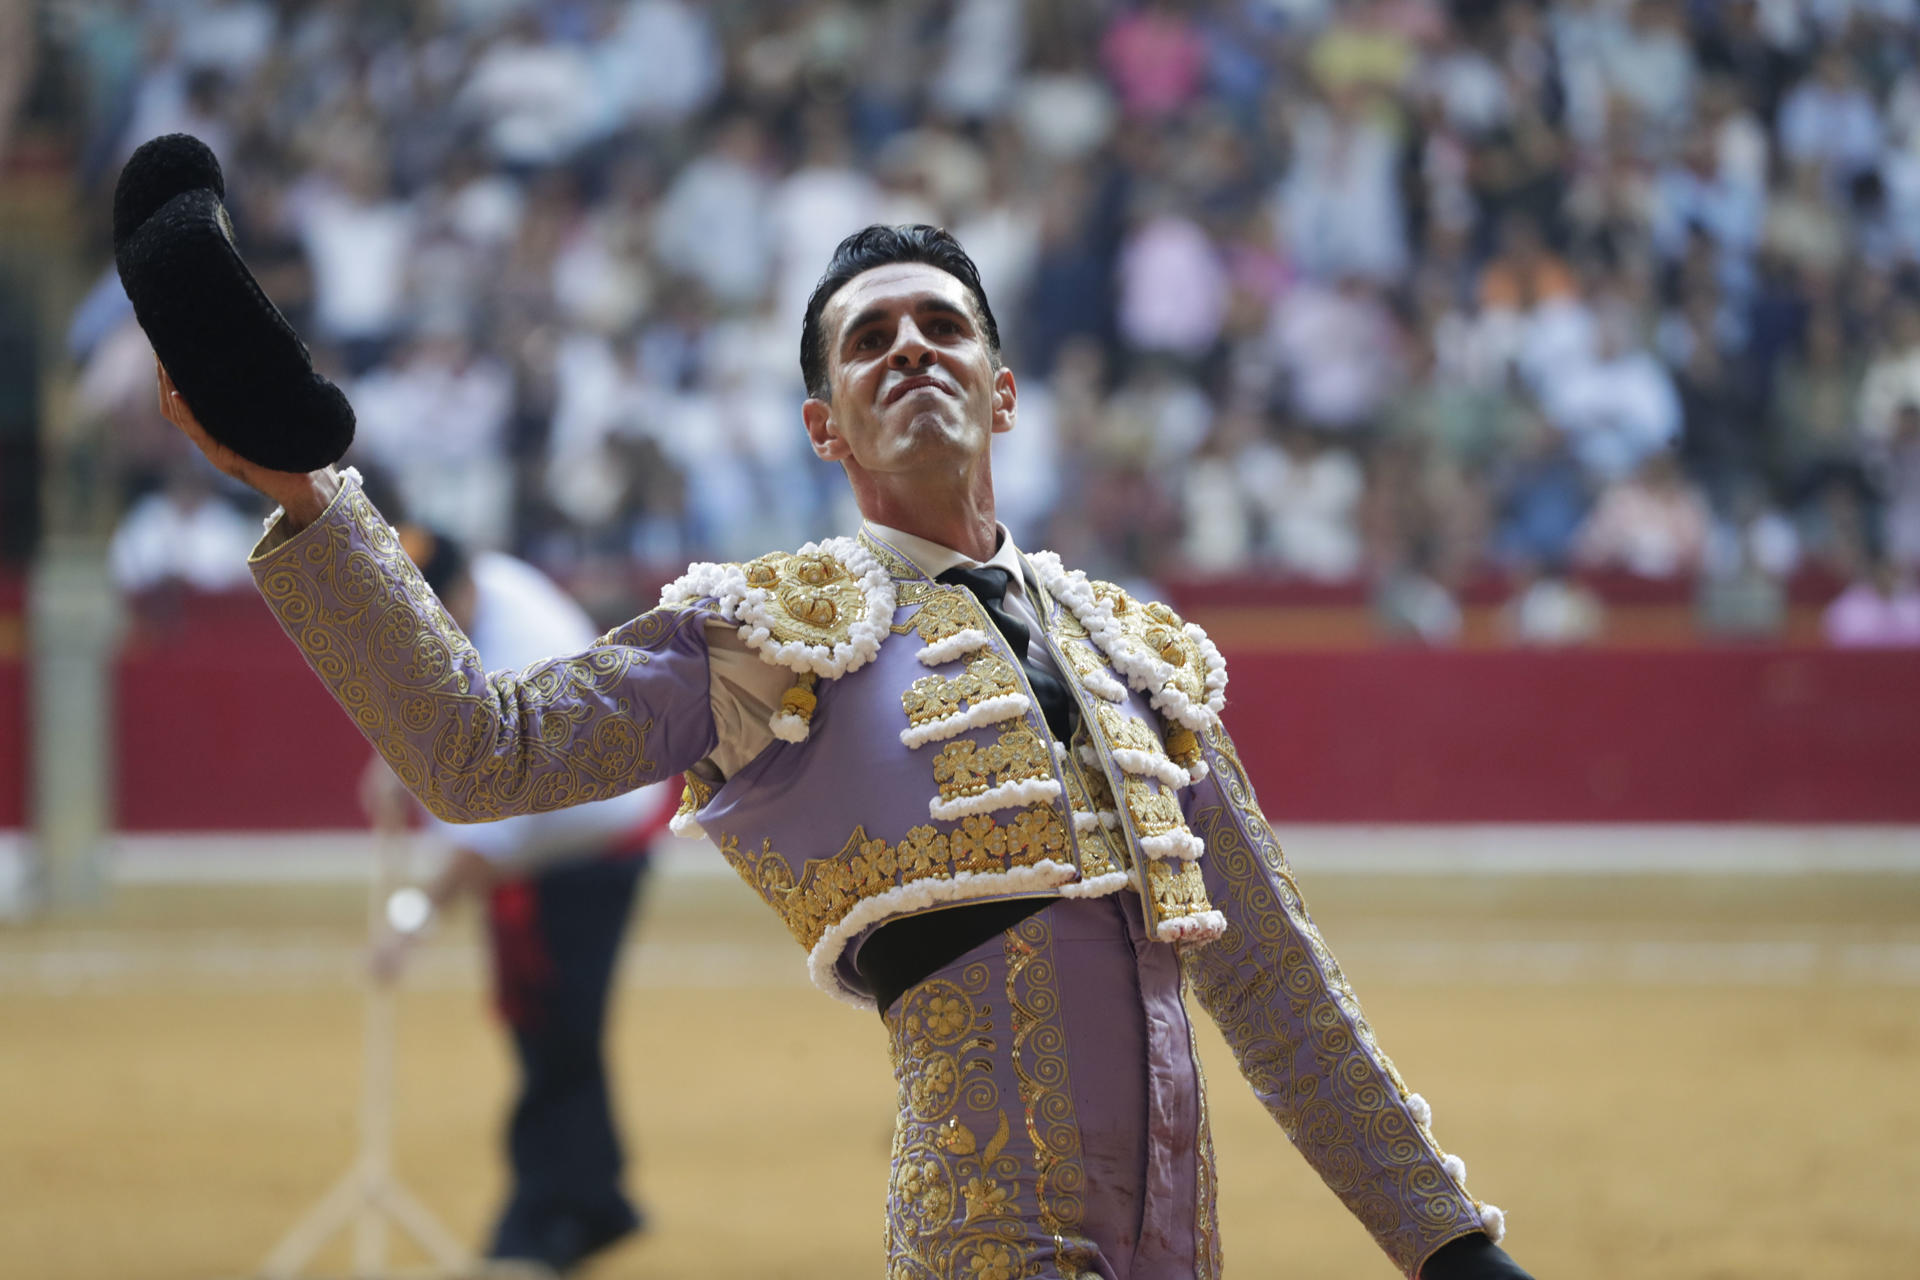 El diestro Alejandro Talavante durante el festejo taurino de la Feria del Pilar, este sábado en la plaza de toros de la Misericordia, en Zaragoza. EFE/ Javier Cebollada